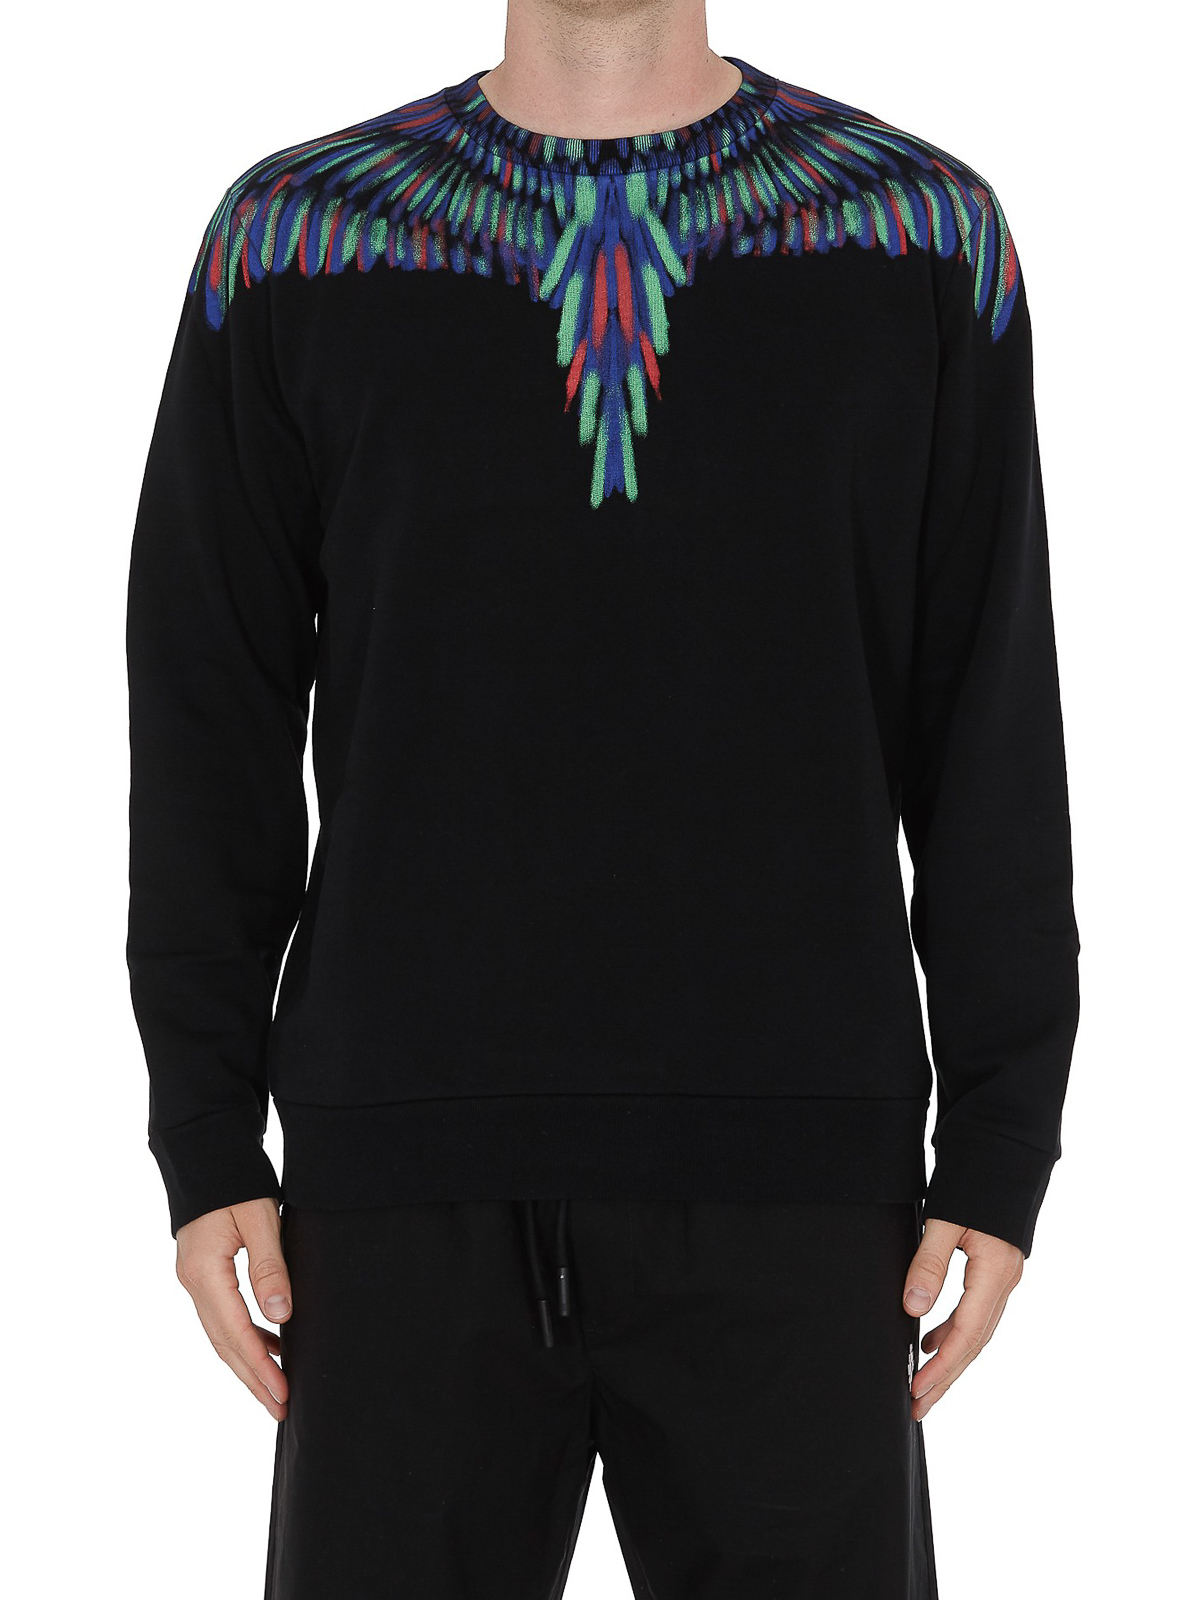 Marcelo Wings Sweatshirt Online Sale, TO 68% OFF